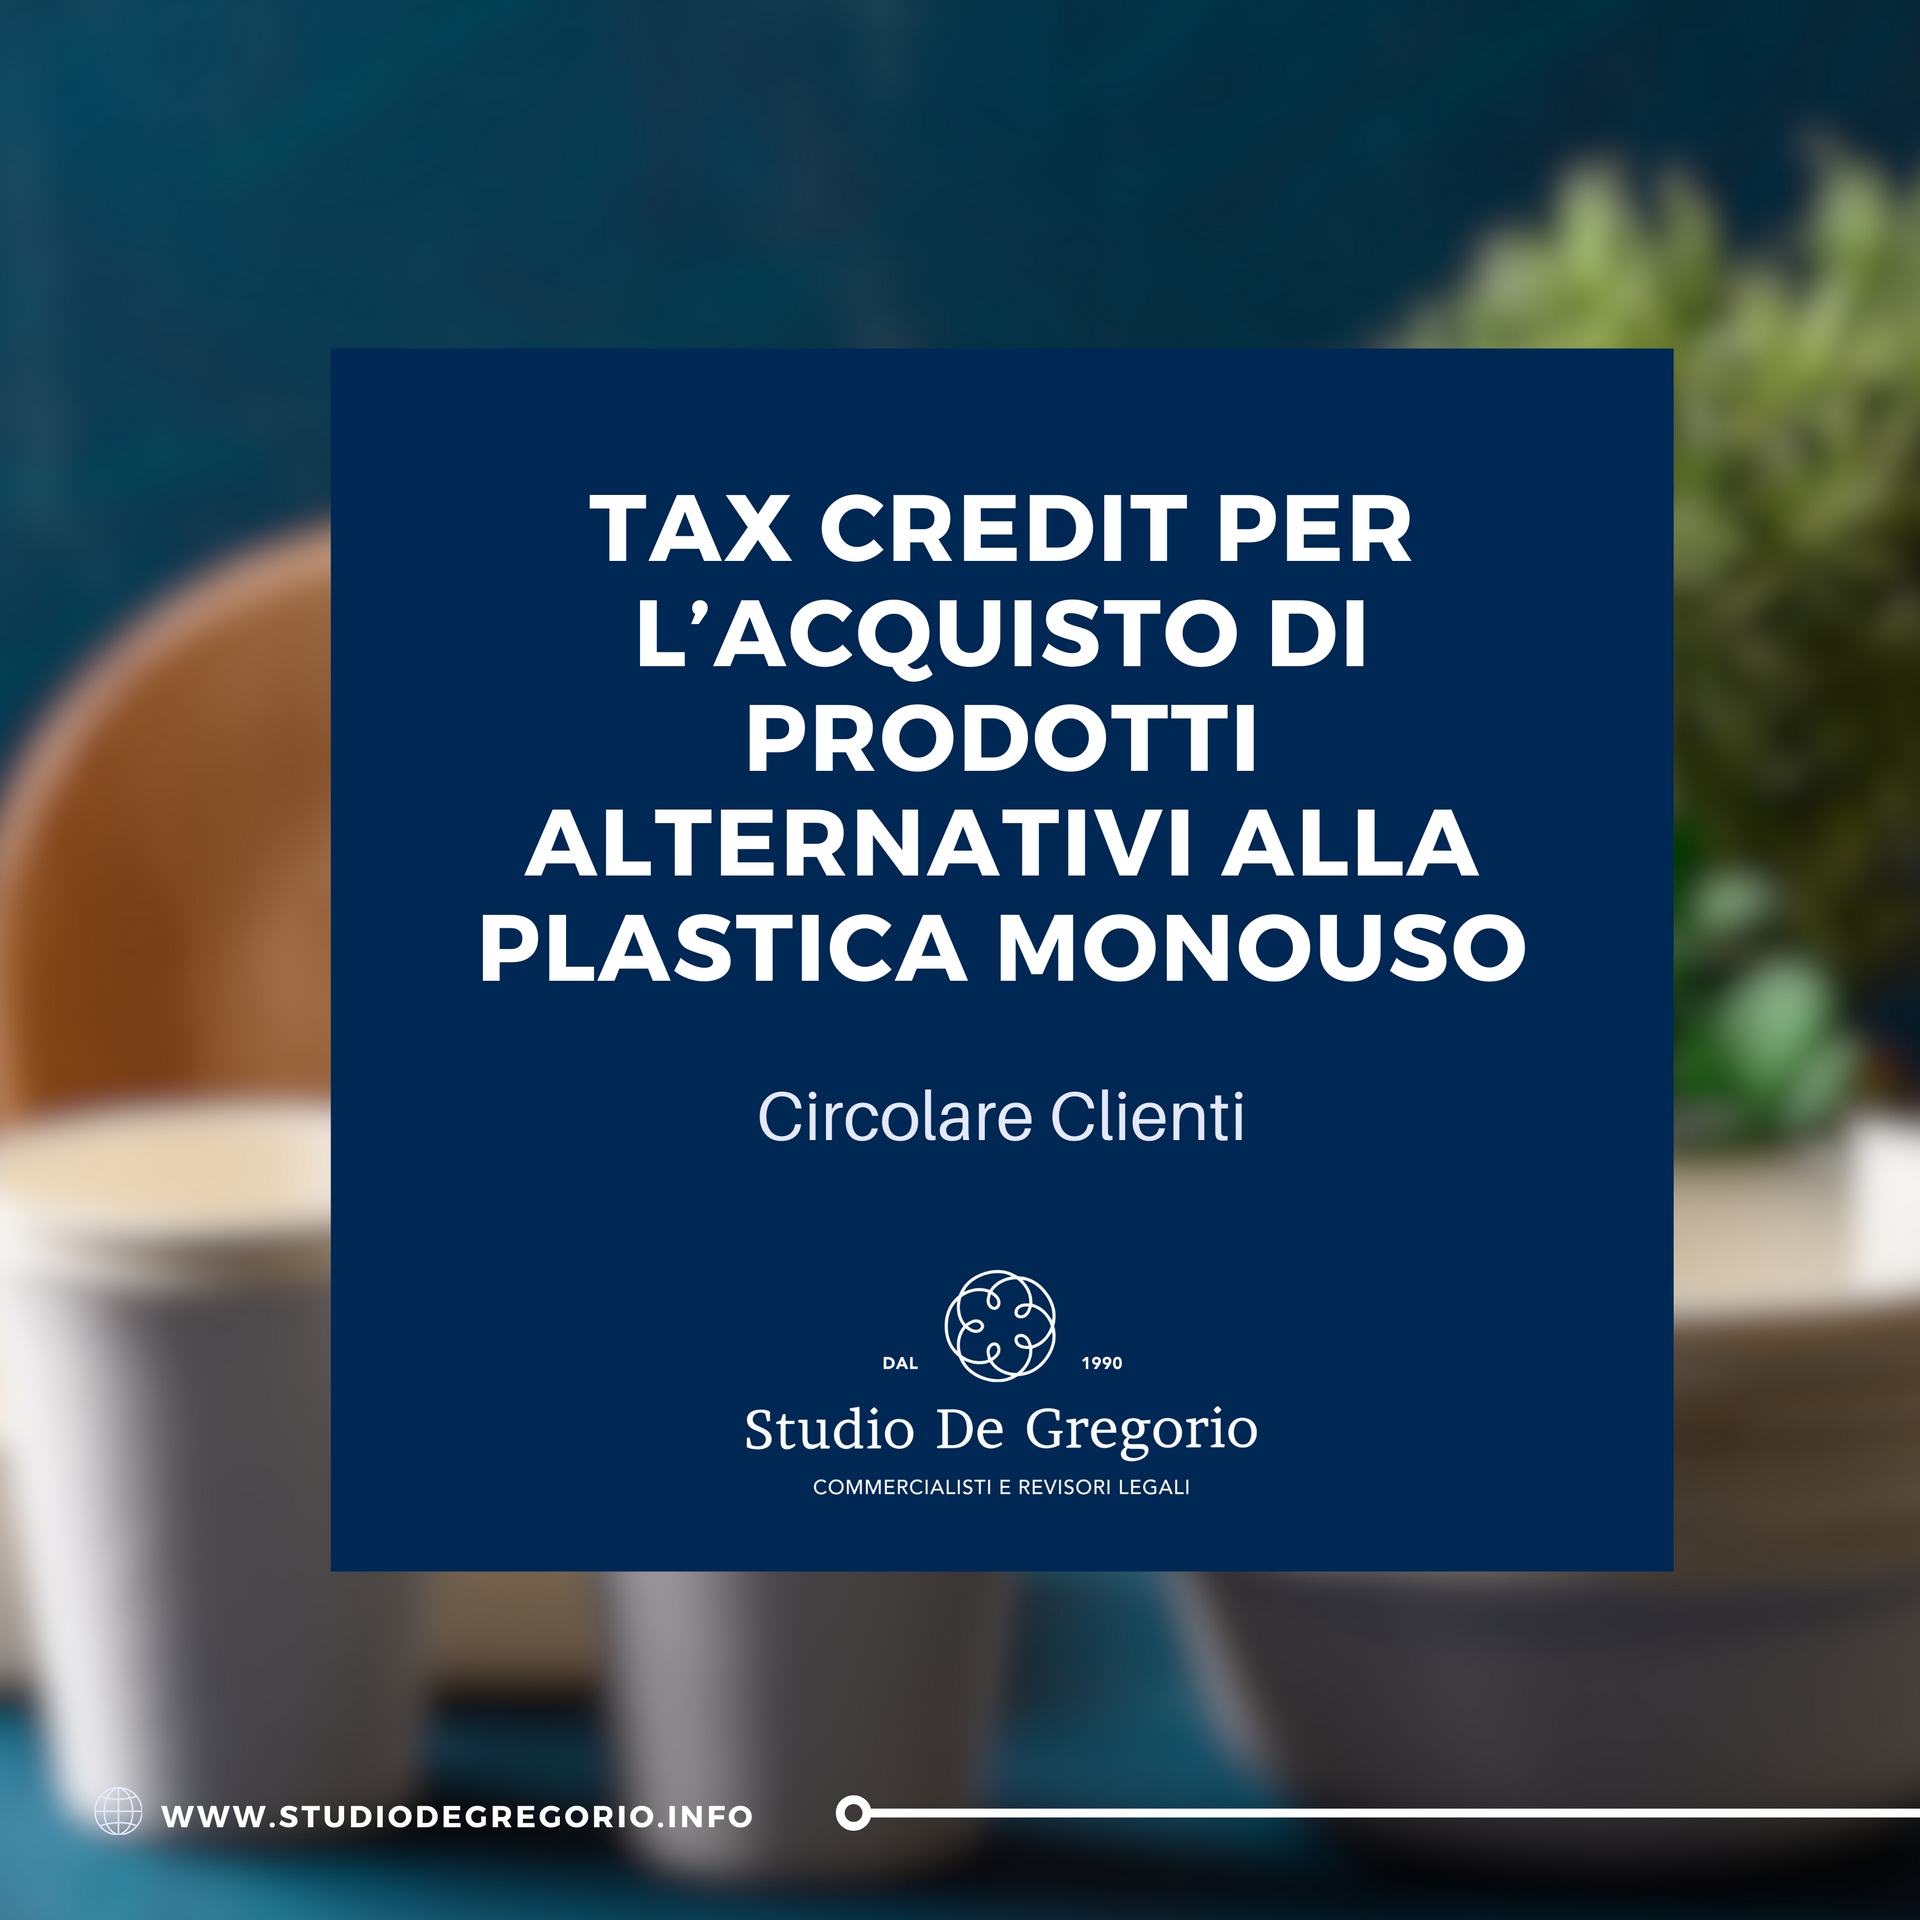 tax credit acquisto plastica monouso biodegradabili commercialisti tasse pinerolo roma torino